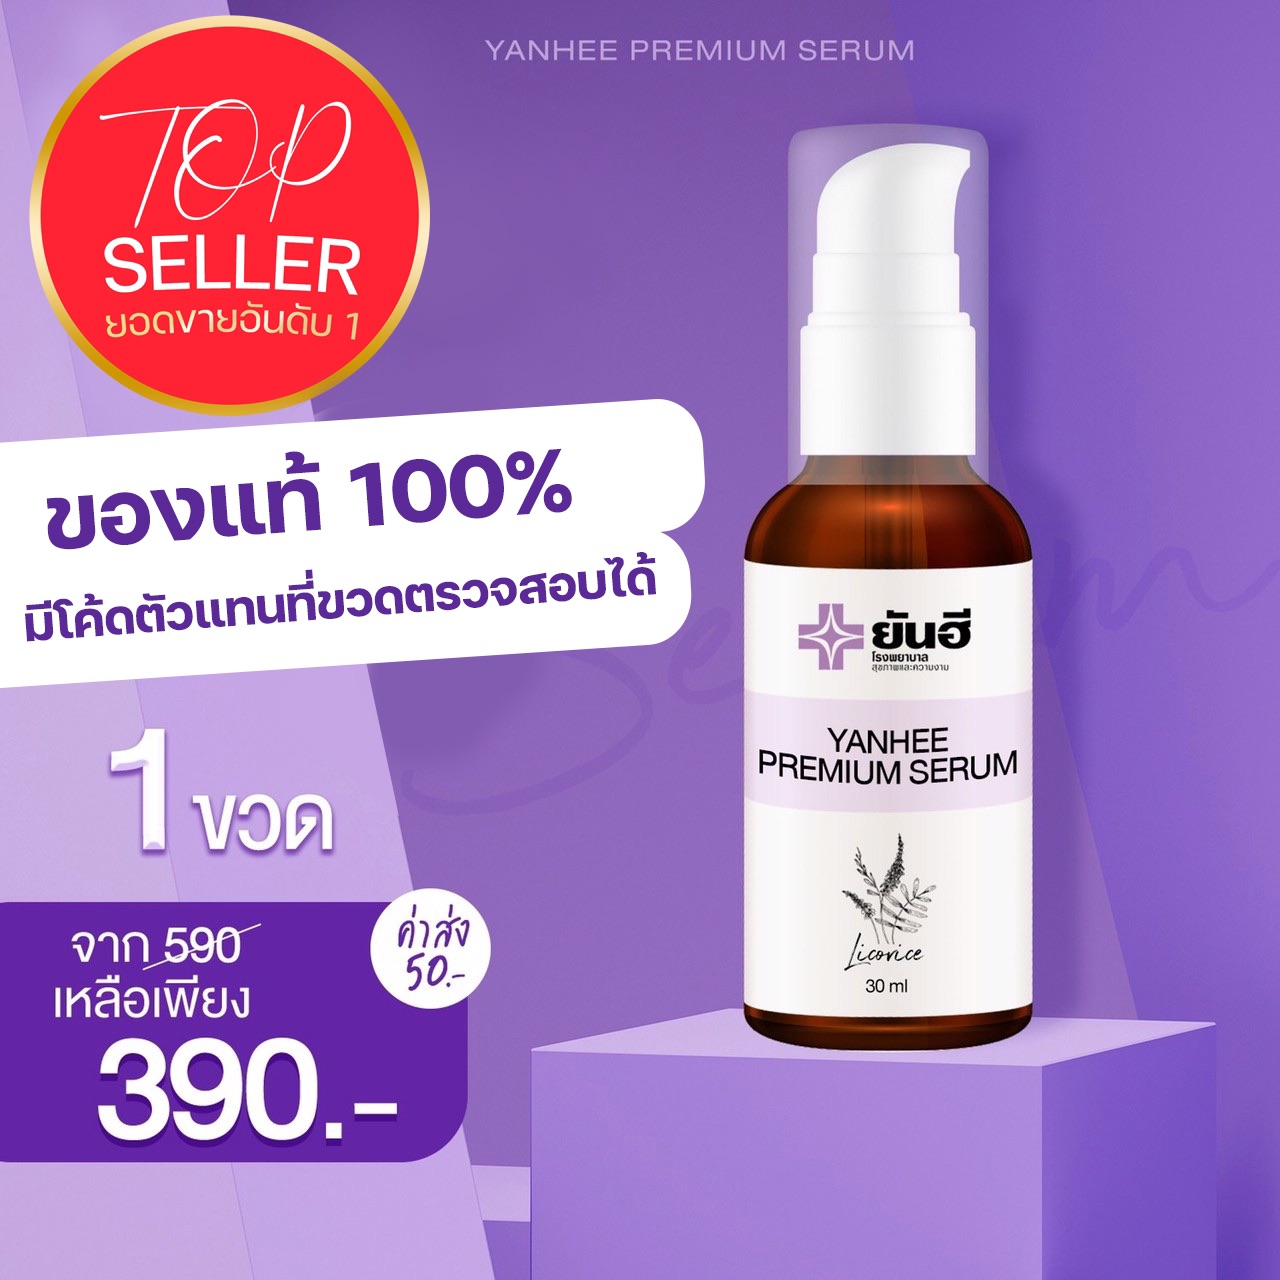 (สินค้าใหม่!!)1 ขวด 390 บาท ยันฮี พรีเมี่ยม เซรั่ม Yanhee premium serum ขนาด 30มล.